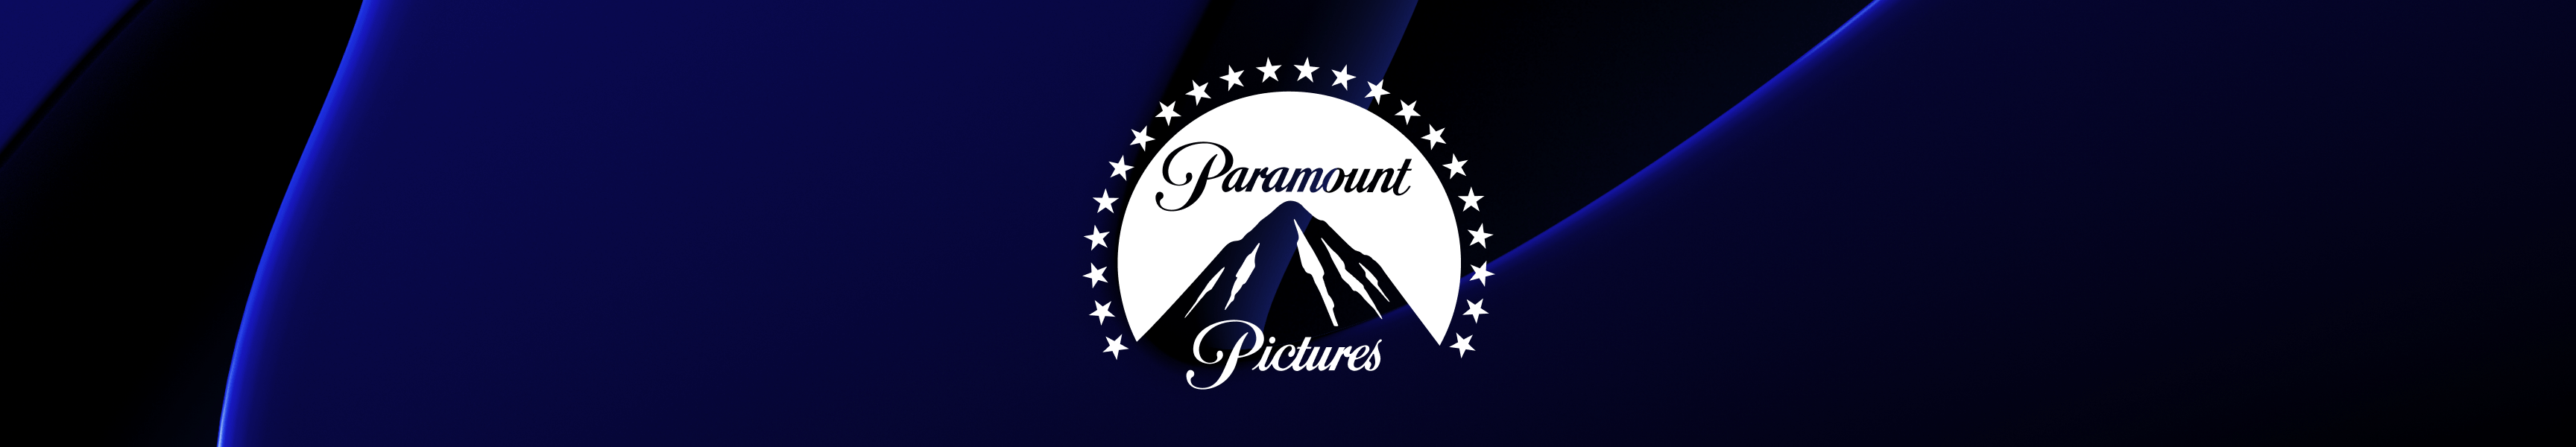 Paramount Pictures Maison et bureau